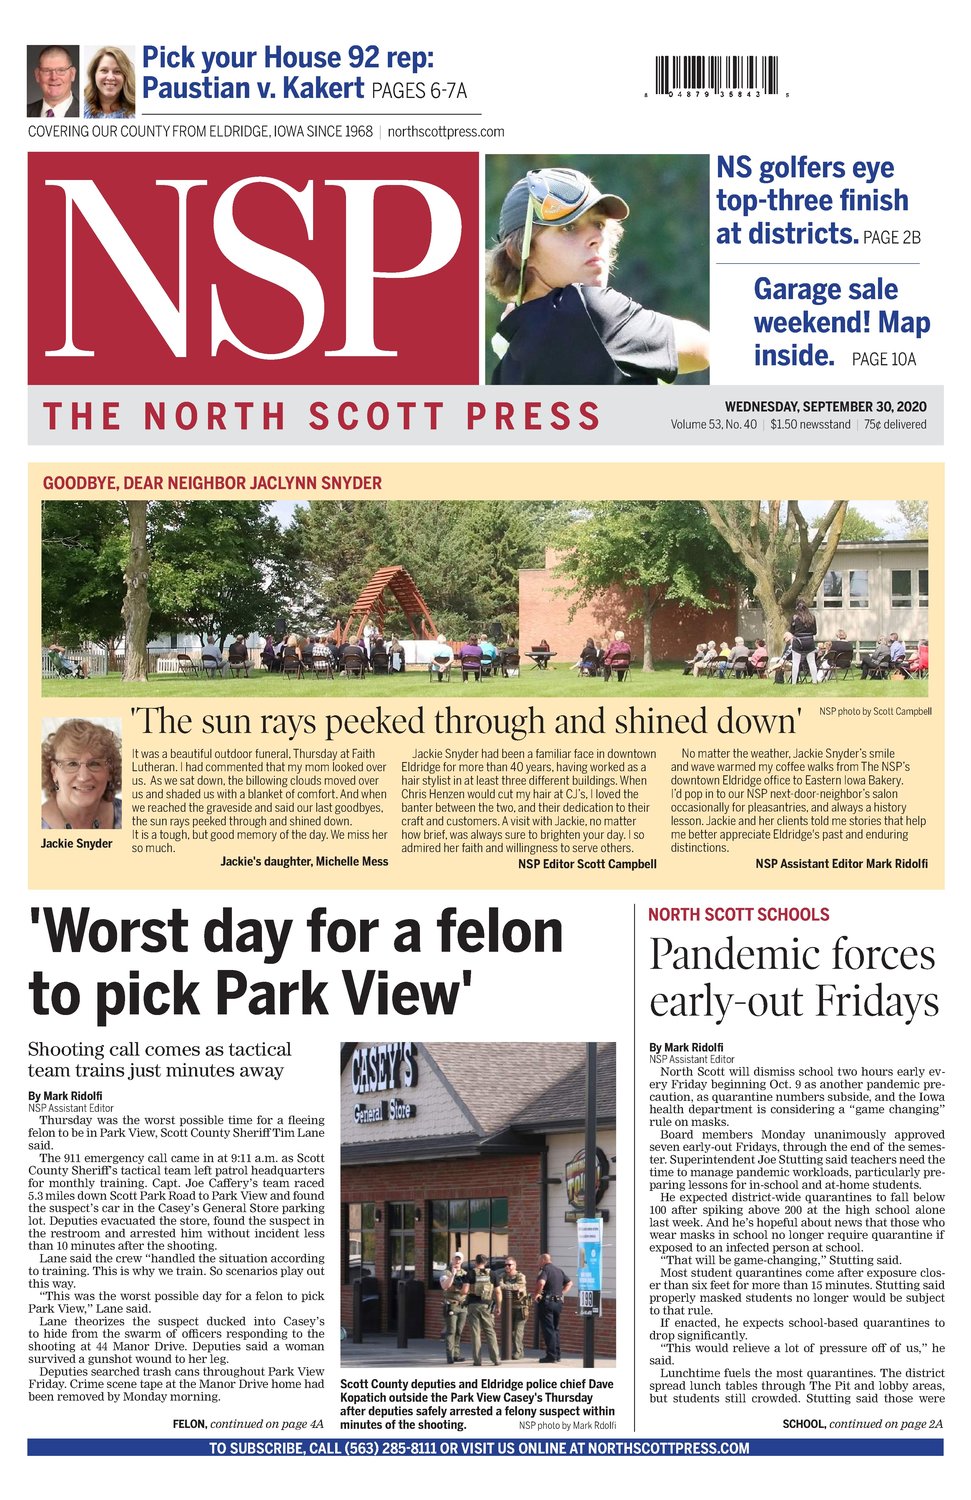 North Scott Press — September 30, 2020 North Scott Press